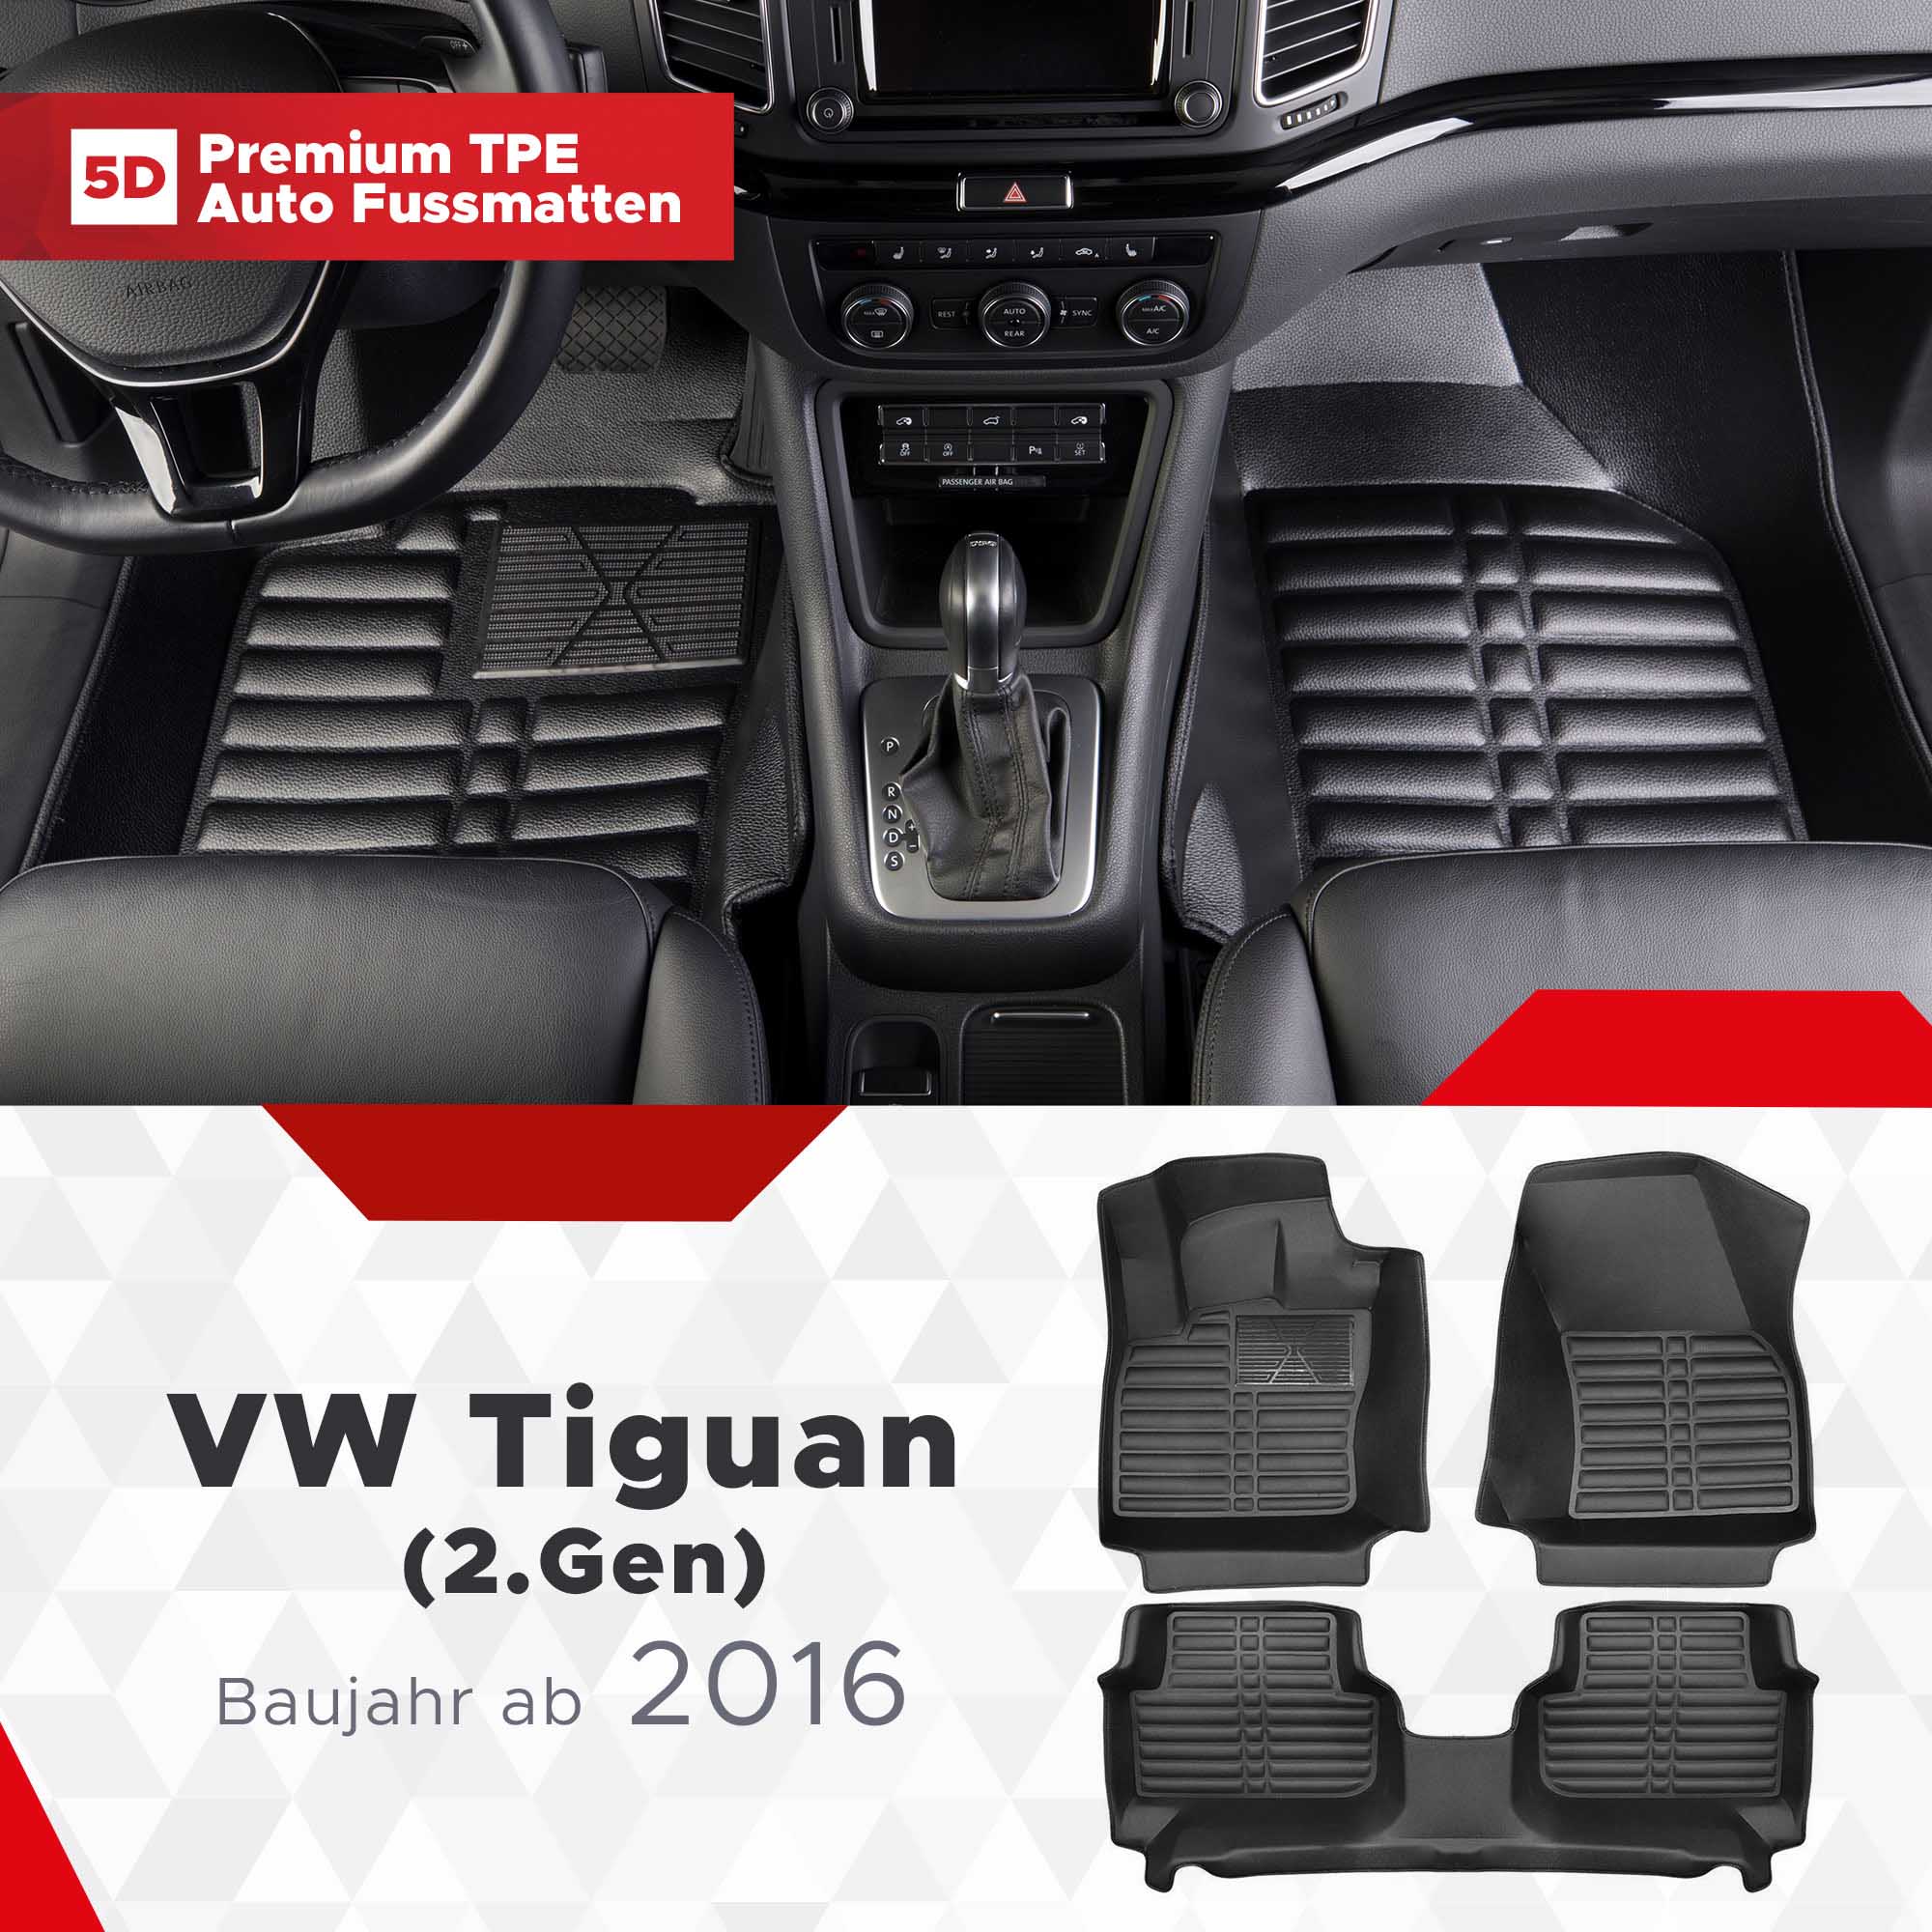 5D Premium Car Floor Mats TPE Set fits VW Tiguan (2.Gen) Year of  Construction from 2016 onwards